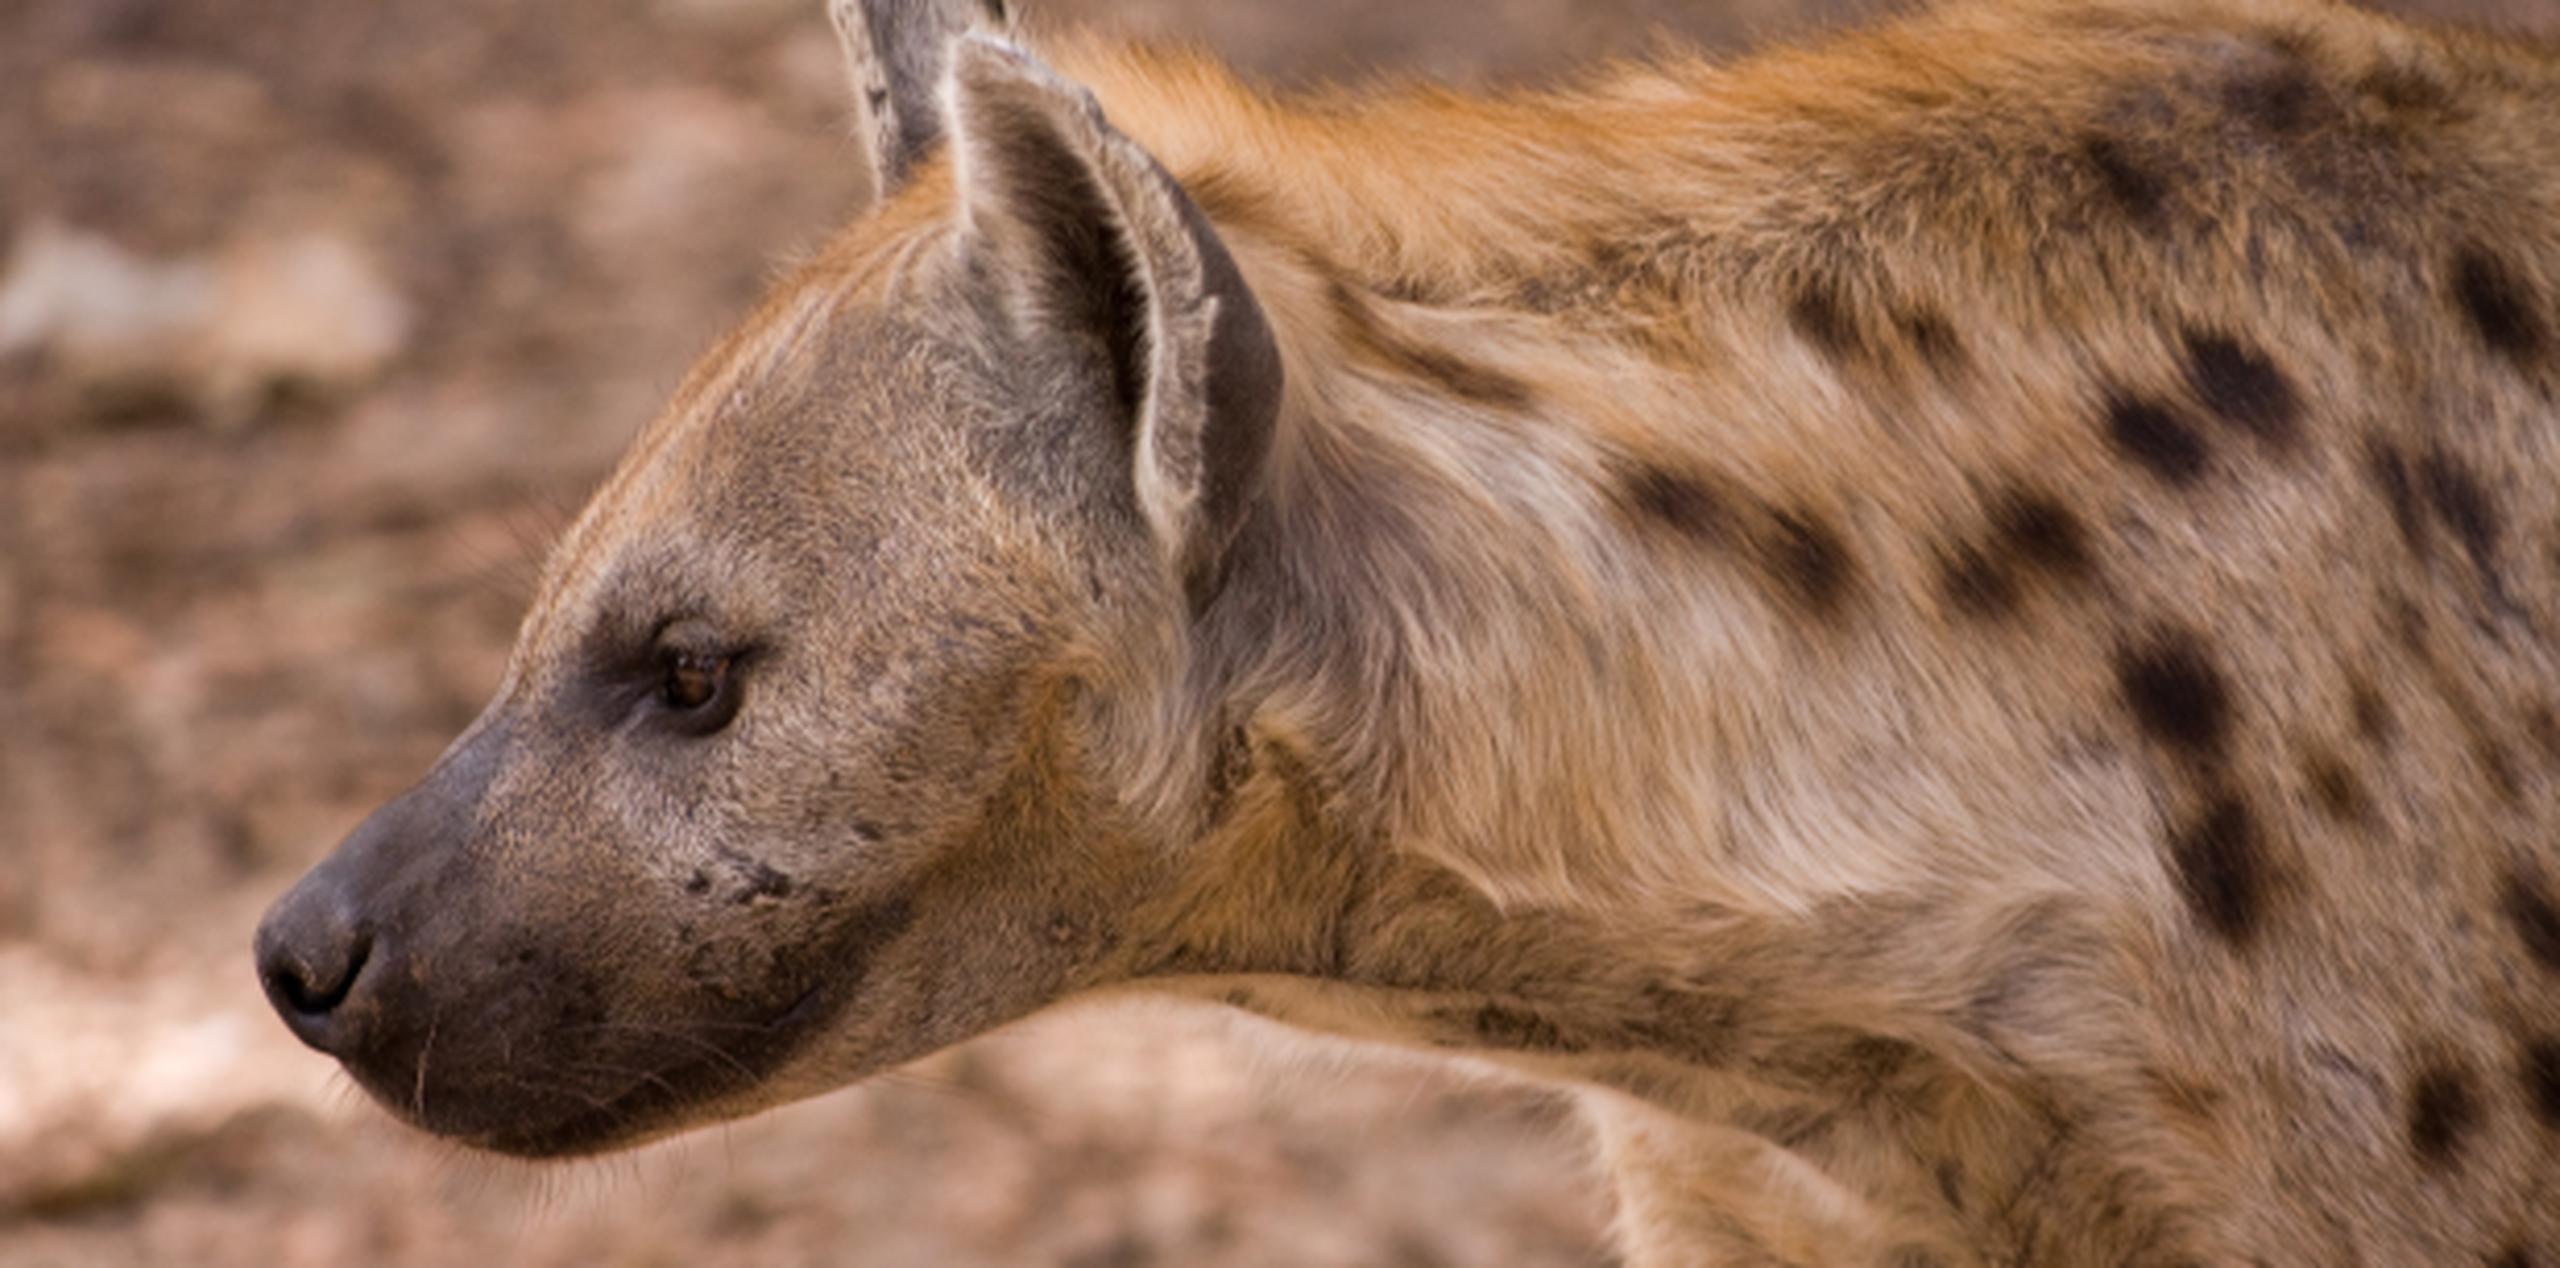 El servicio de parques nacionales deploró el incidente y dijo que los guardabosques buscaron en vano a la hiena. (Suministrada)